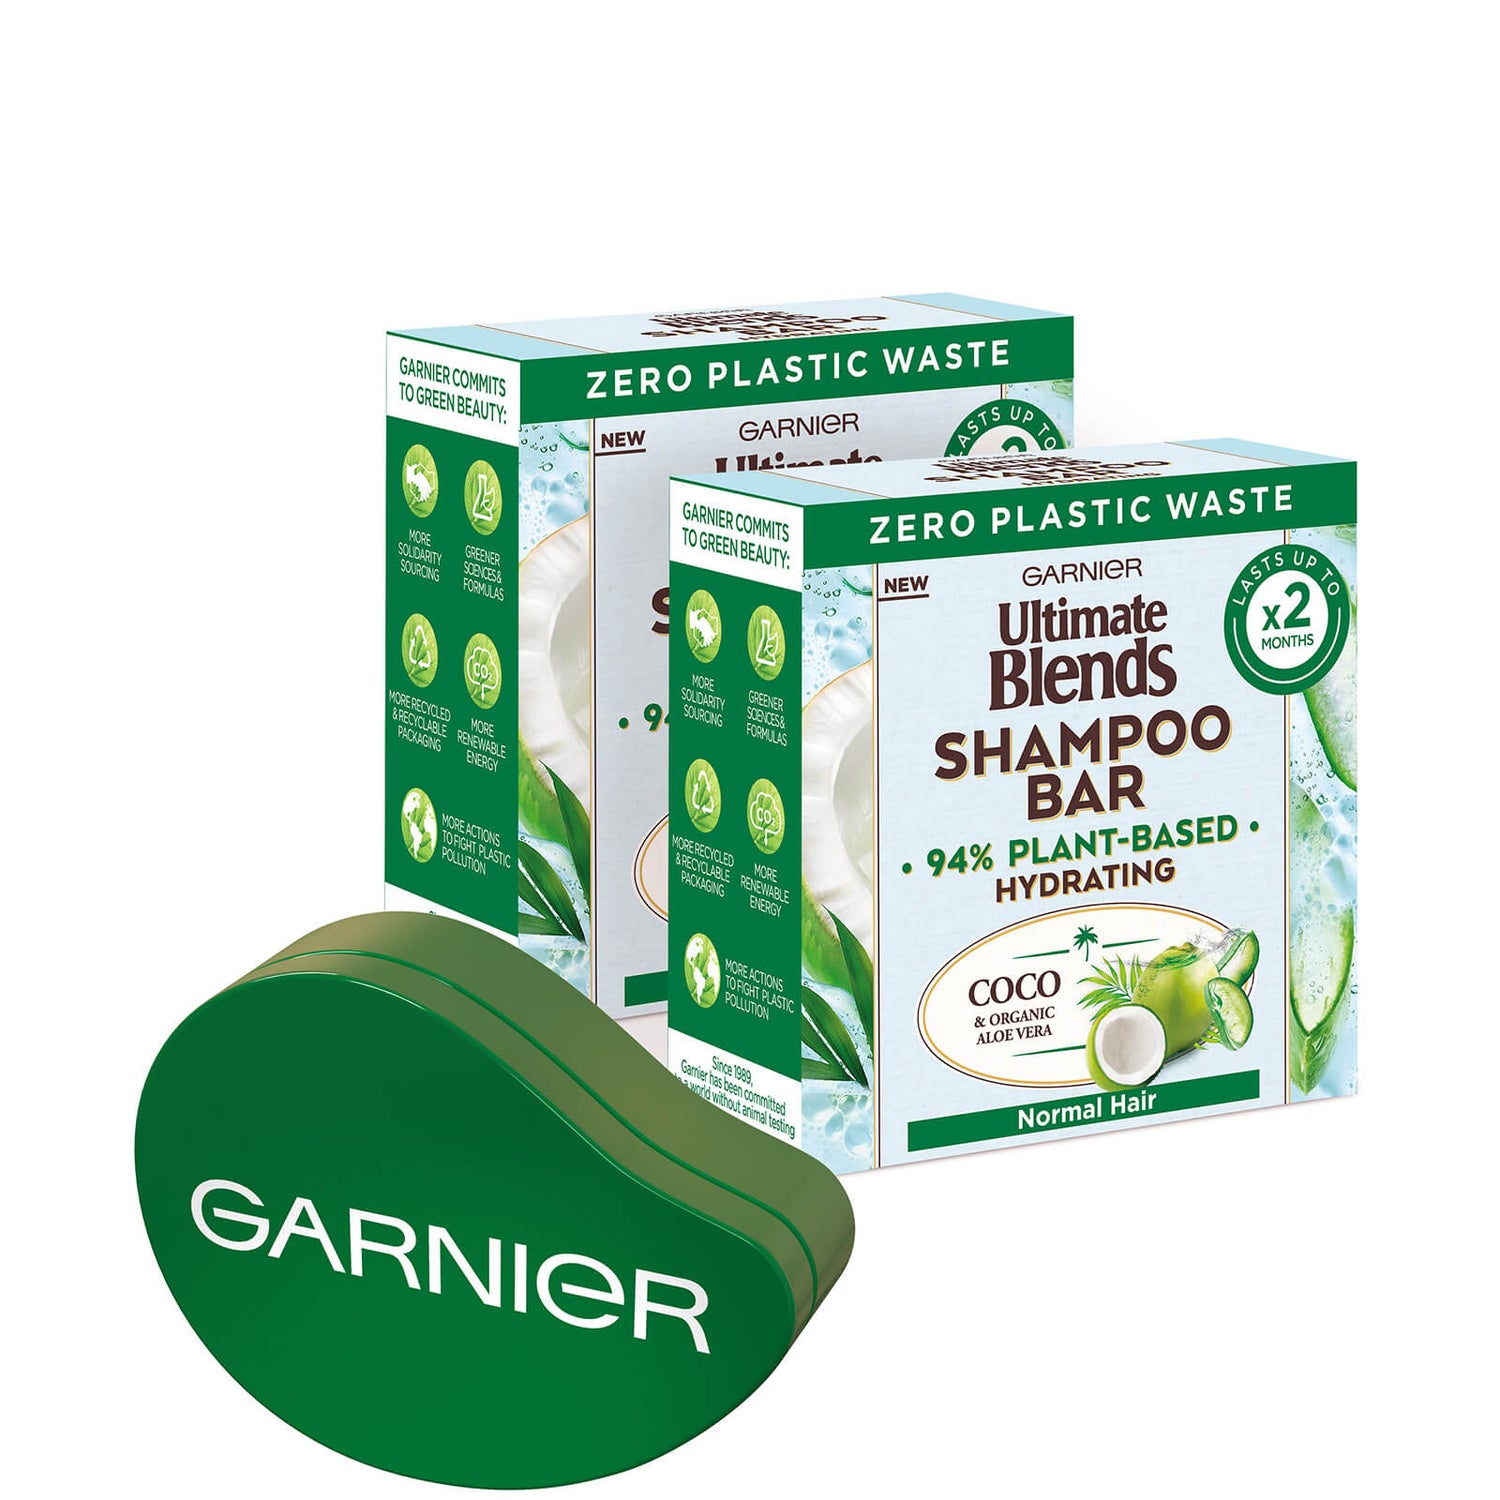 Garnier Ultimate Blends Kokosnuss Shampoo Bar Bundle